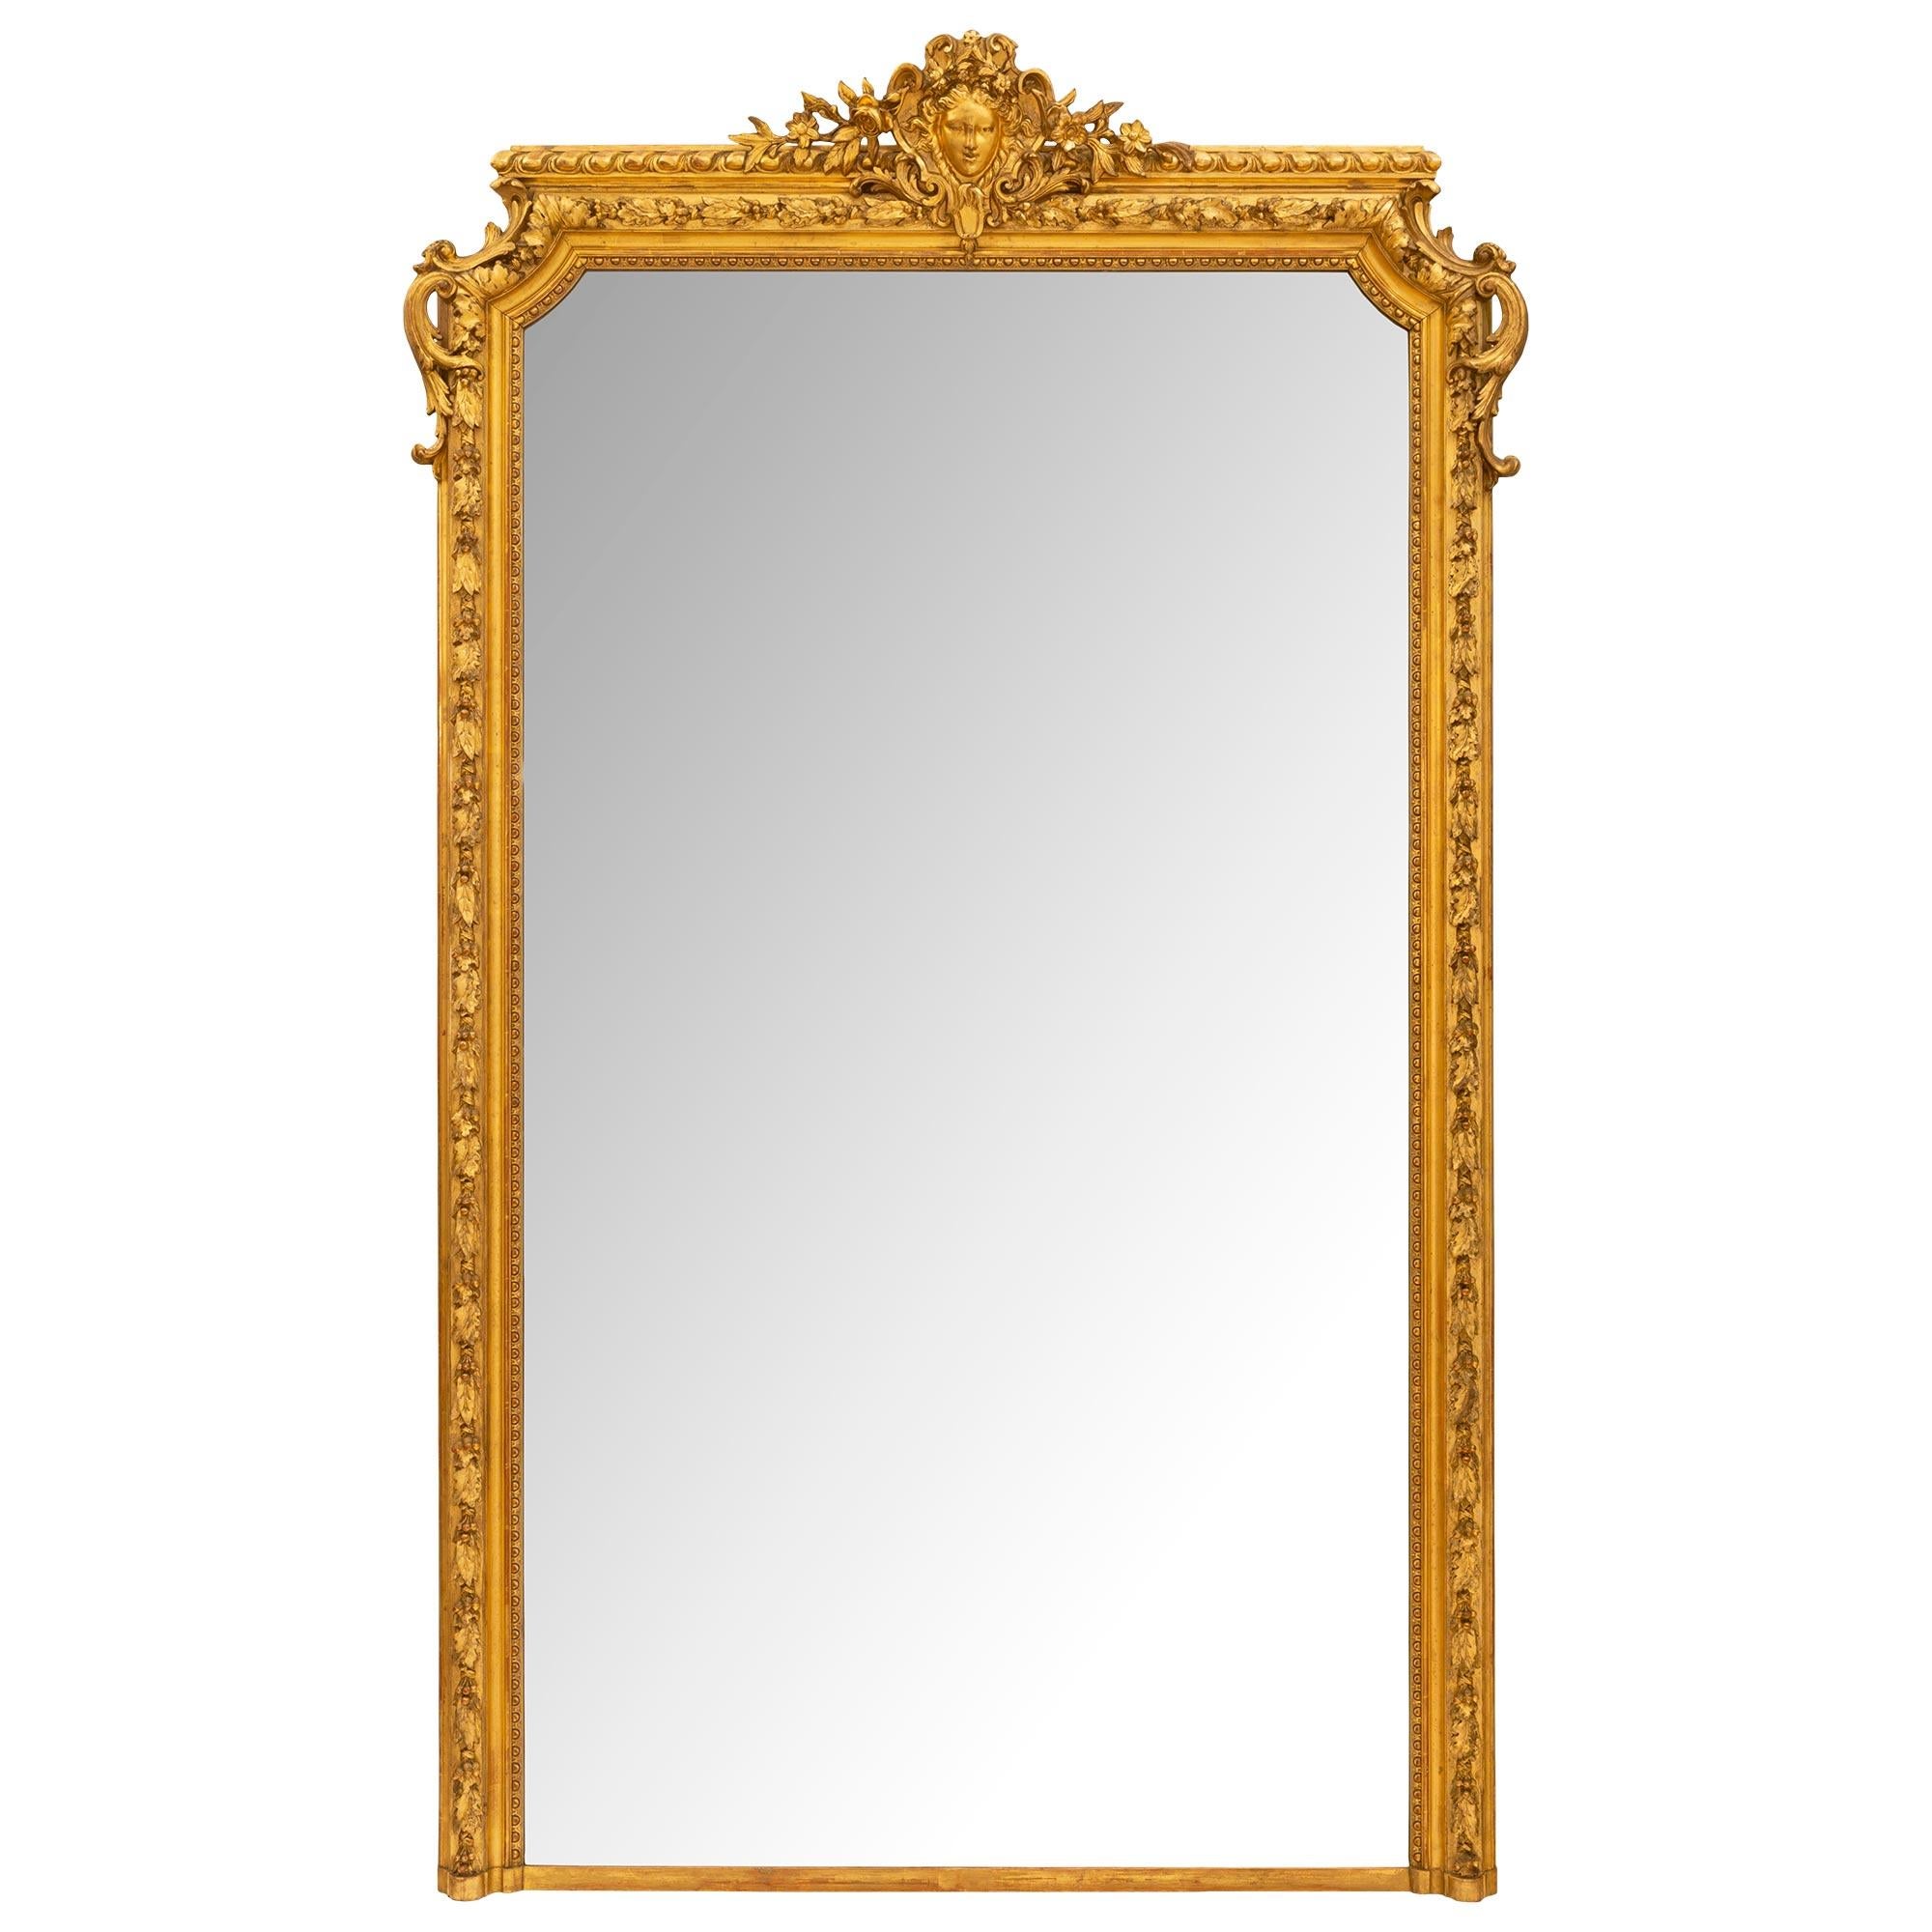 Eine wichtige und große Französisch 19. Jahrhundert Louis XVI st. Giltwood Spiegel mit seiner ursprünglichen Spiegelplatte und original vergoldet. Der Spiegel hat einen sehr eindrucksvollen geformten Rahmen mit dicken, fein geschnitzten und